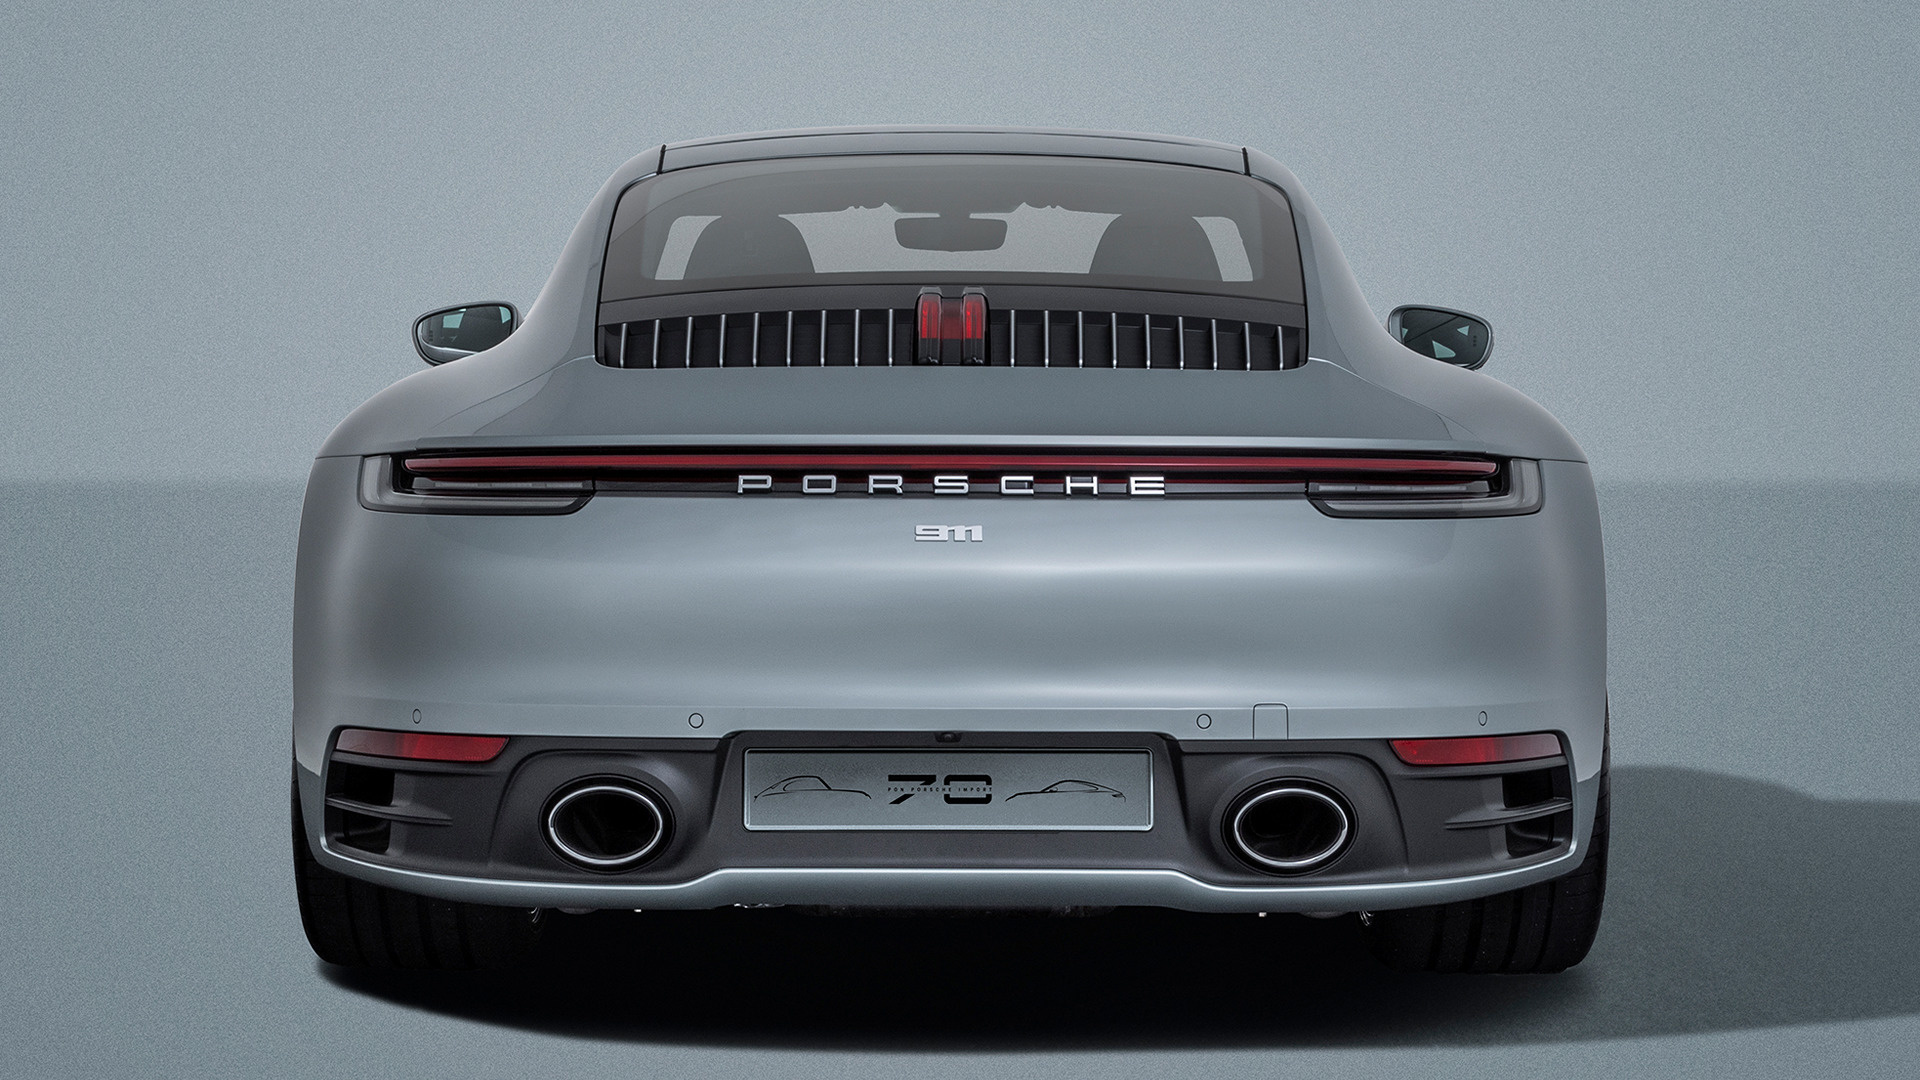 2019 Porsche 911 Carrera S Ben Pon jr. - Wallpapers and HD Images | Car ...